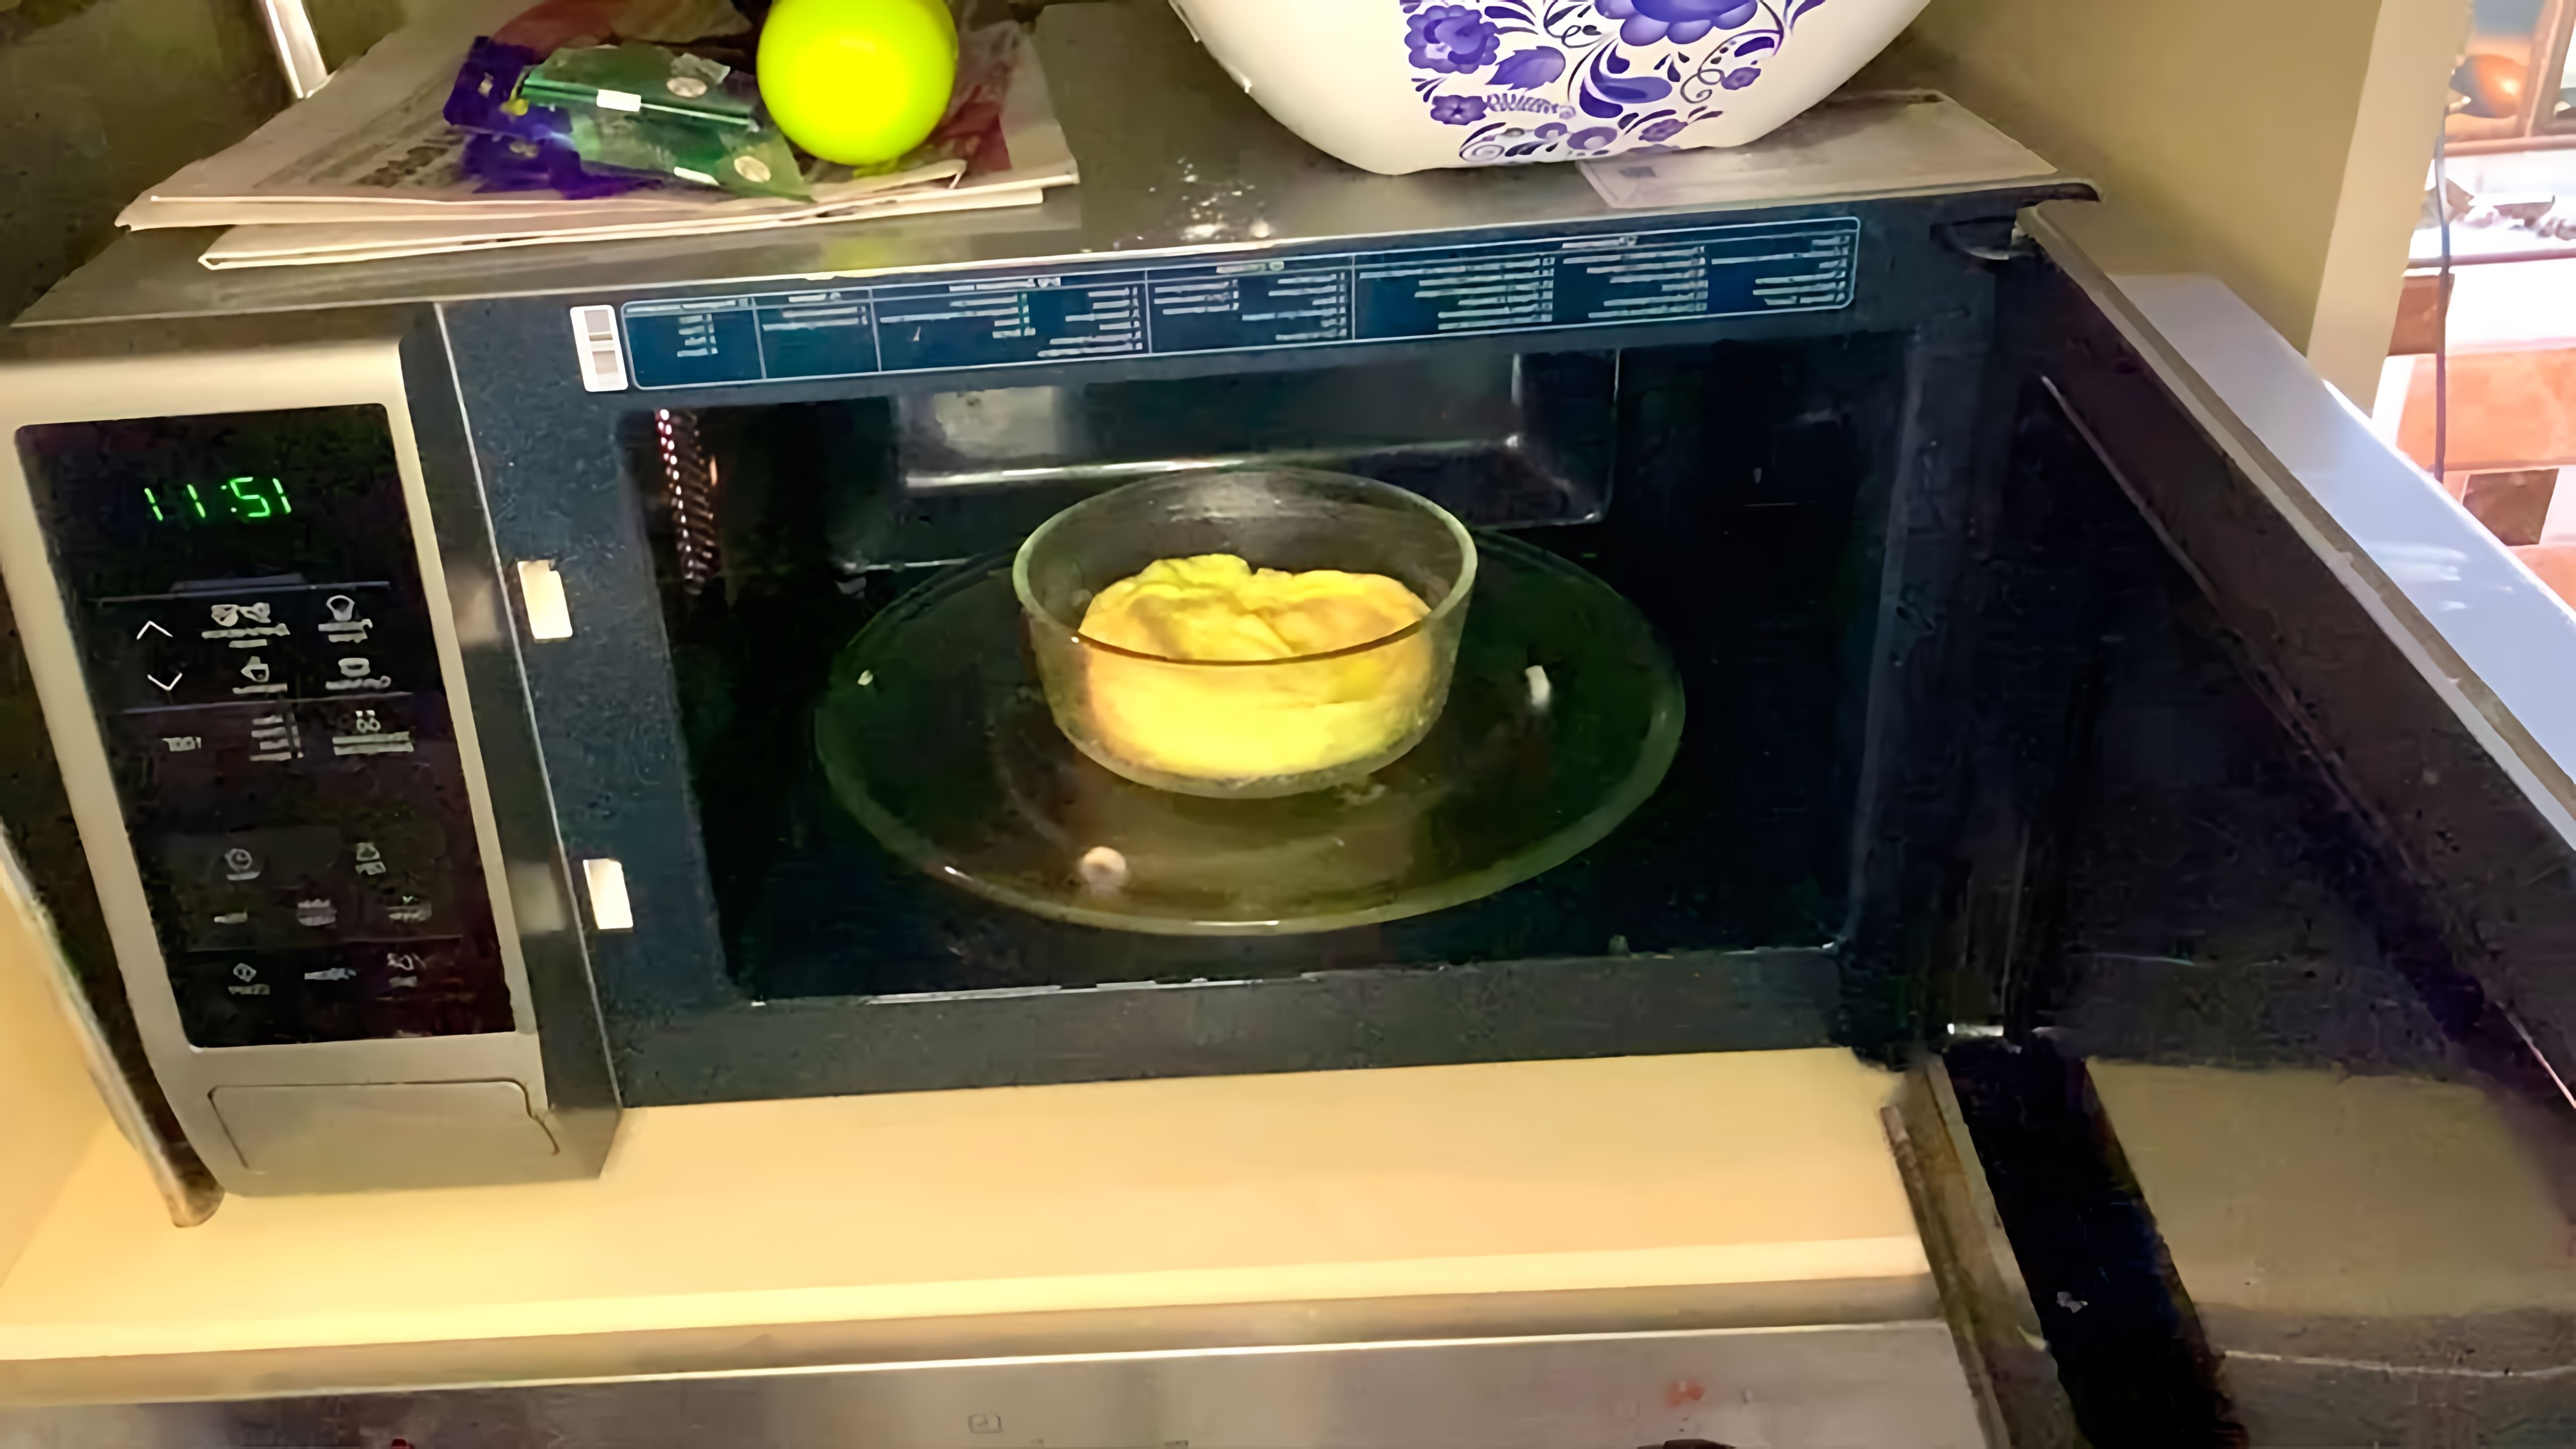 Видео рецепт приготовления омлета в микроволновой печи всего за 5 минут